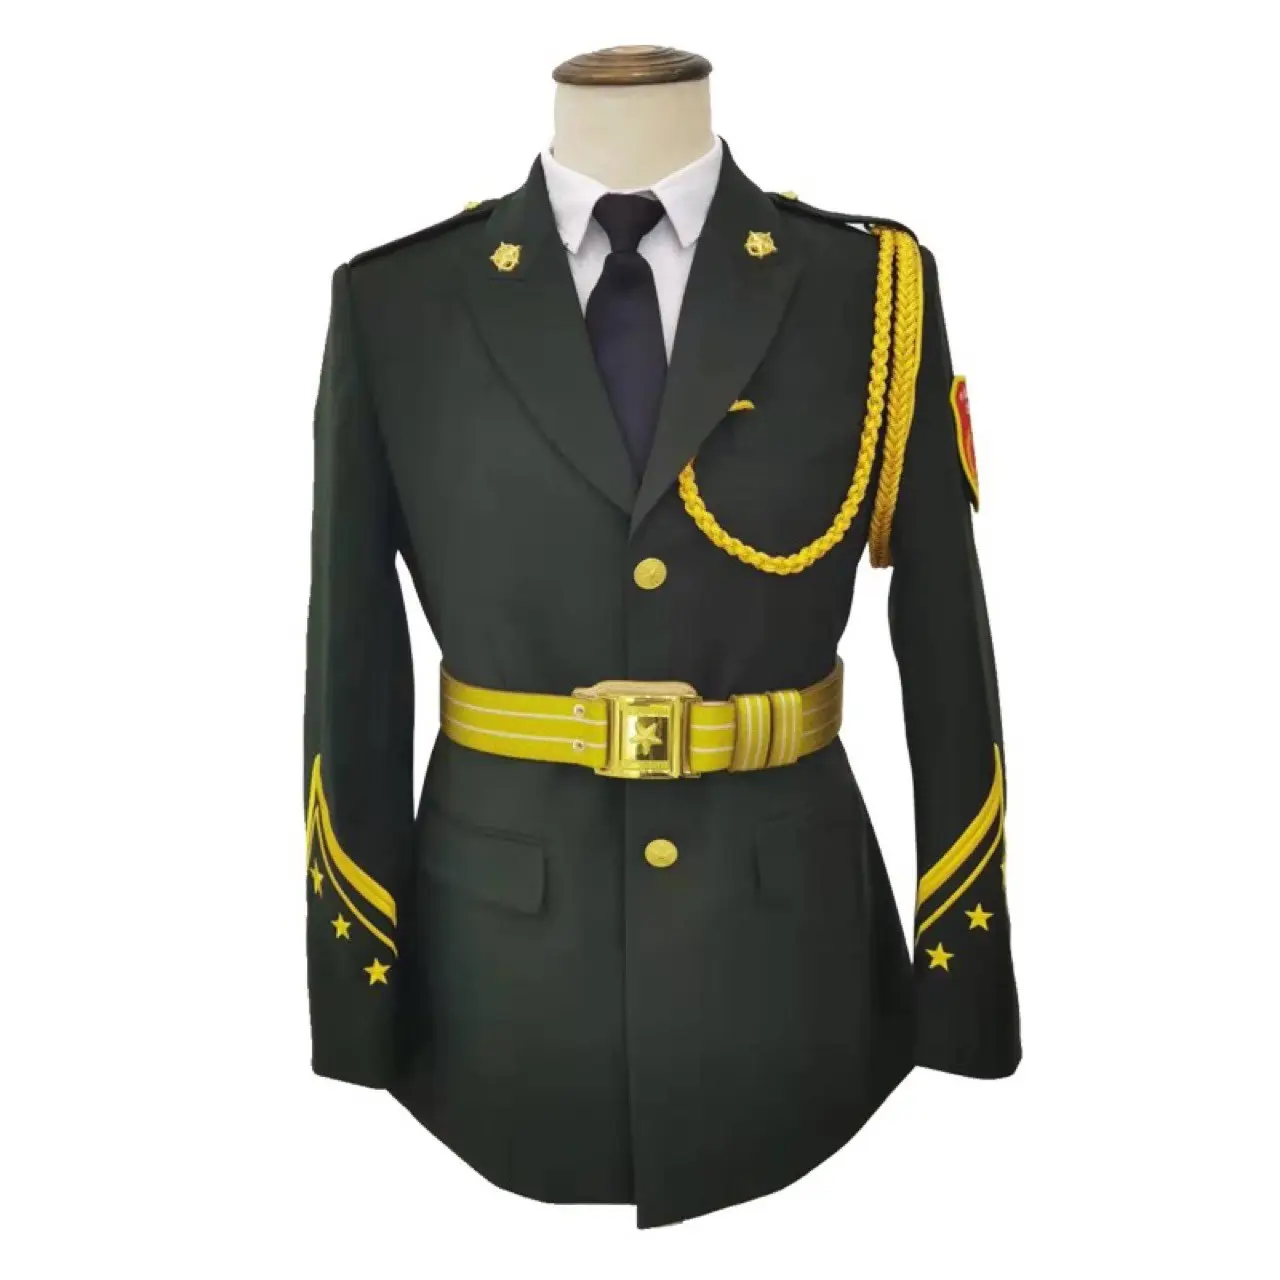 Customized Uniform Aiguillette Ceremony Dress Men's And Women's T-shirt+pants+shirt Suit Security Guard